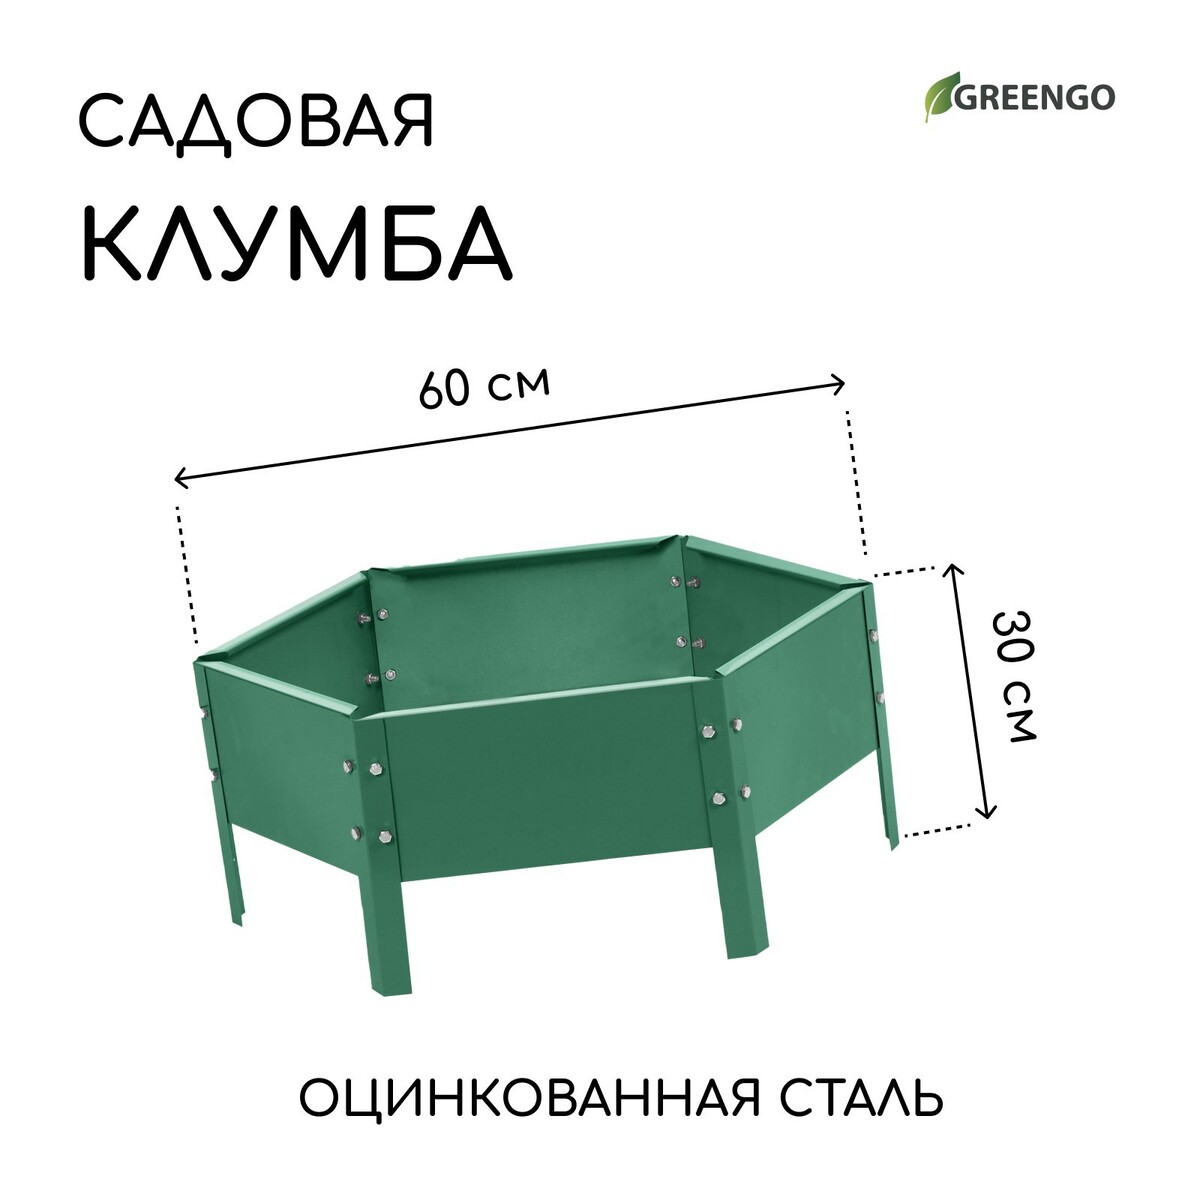 Клумба оцинкованная, d = 60 см, h = 15 см, зеленая, greengo клумба оцинкованная 50 × 15 см ярко зеленая